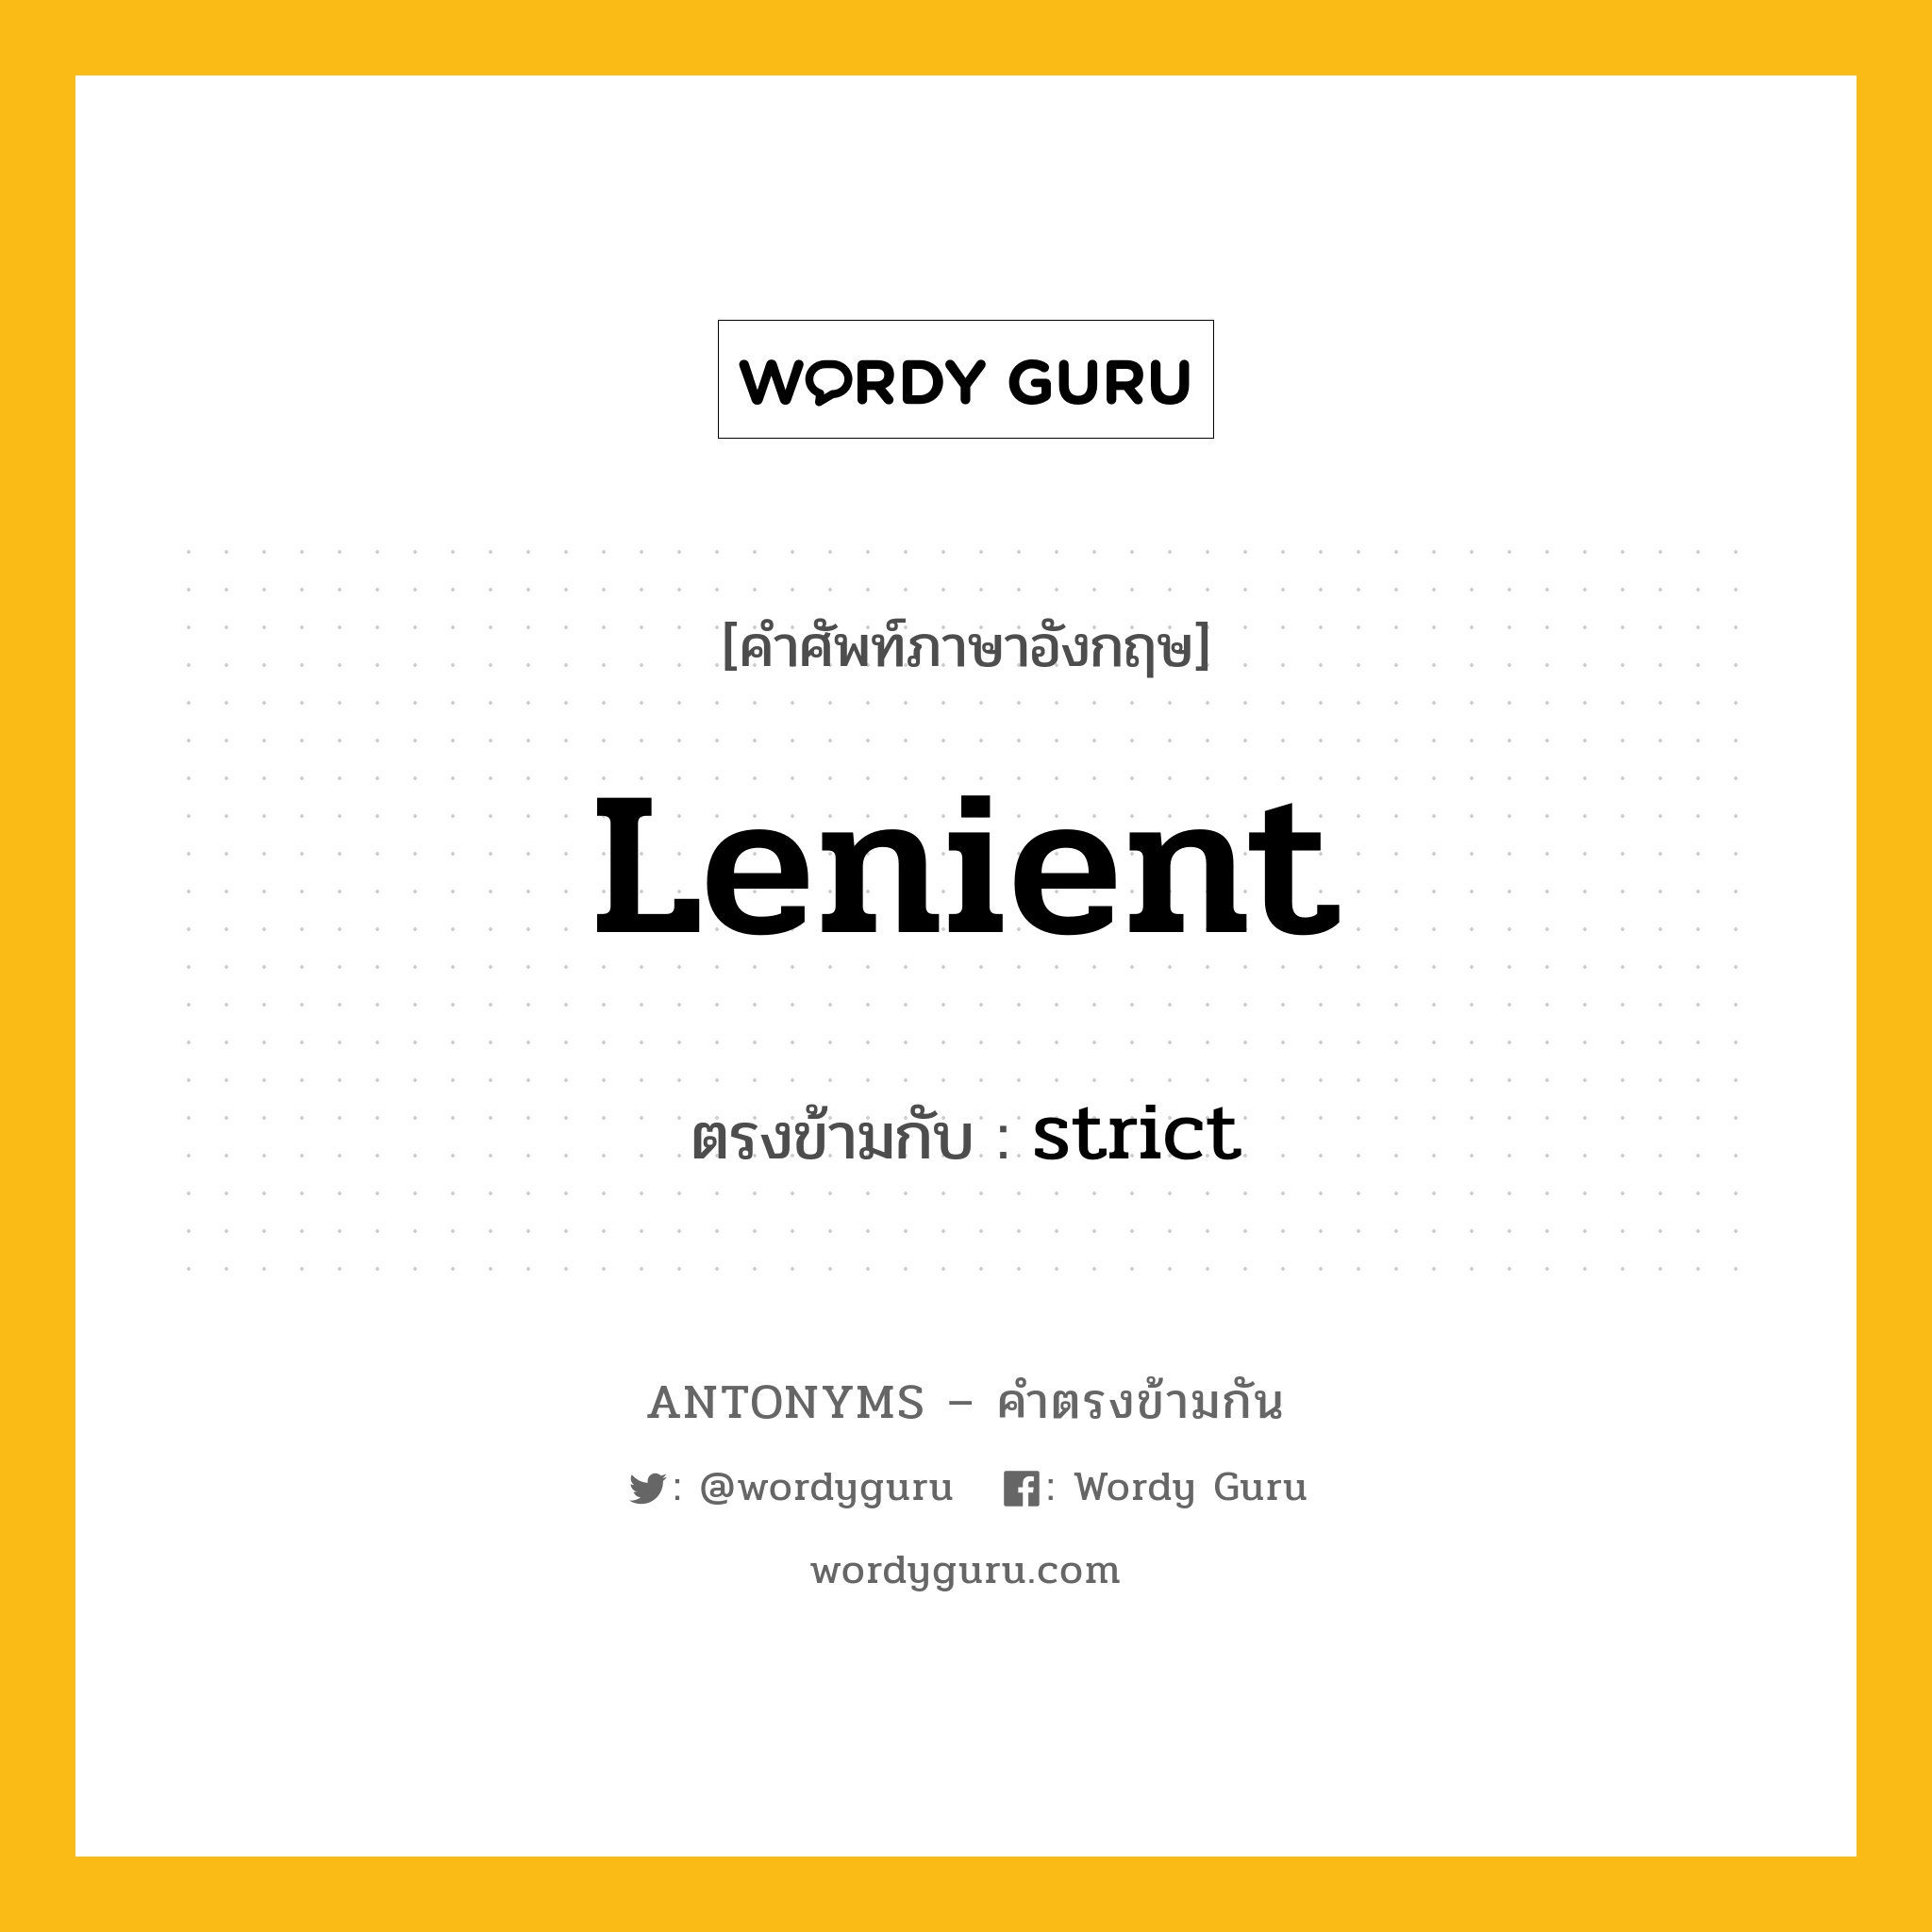 lenient เป็นคำตรงข้ามกับคำไหนบ้าง?, คำศัพท์ภาษาอังกฤษ lenient ตรงข้ามกับ strict หมวด strict